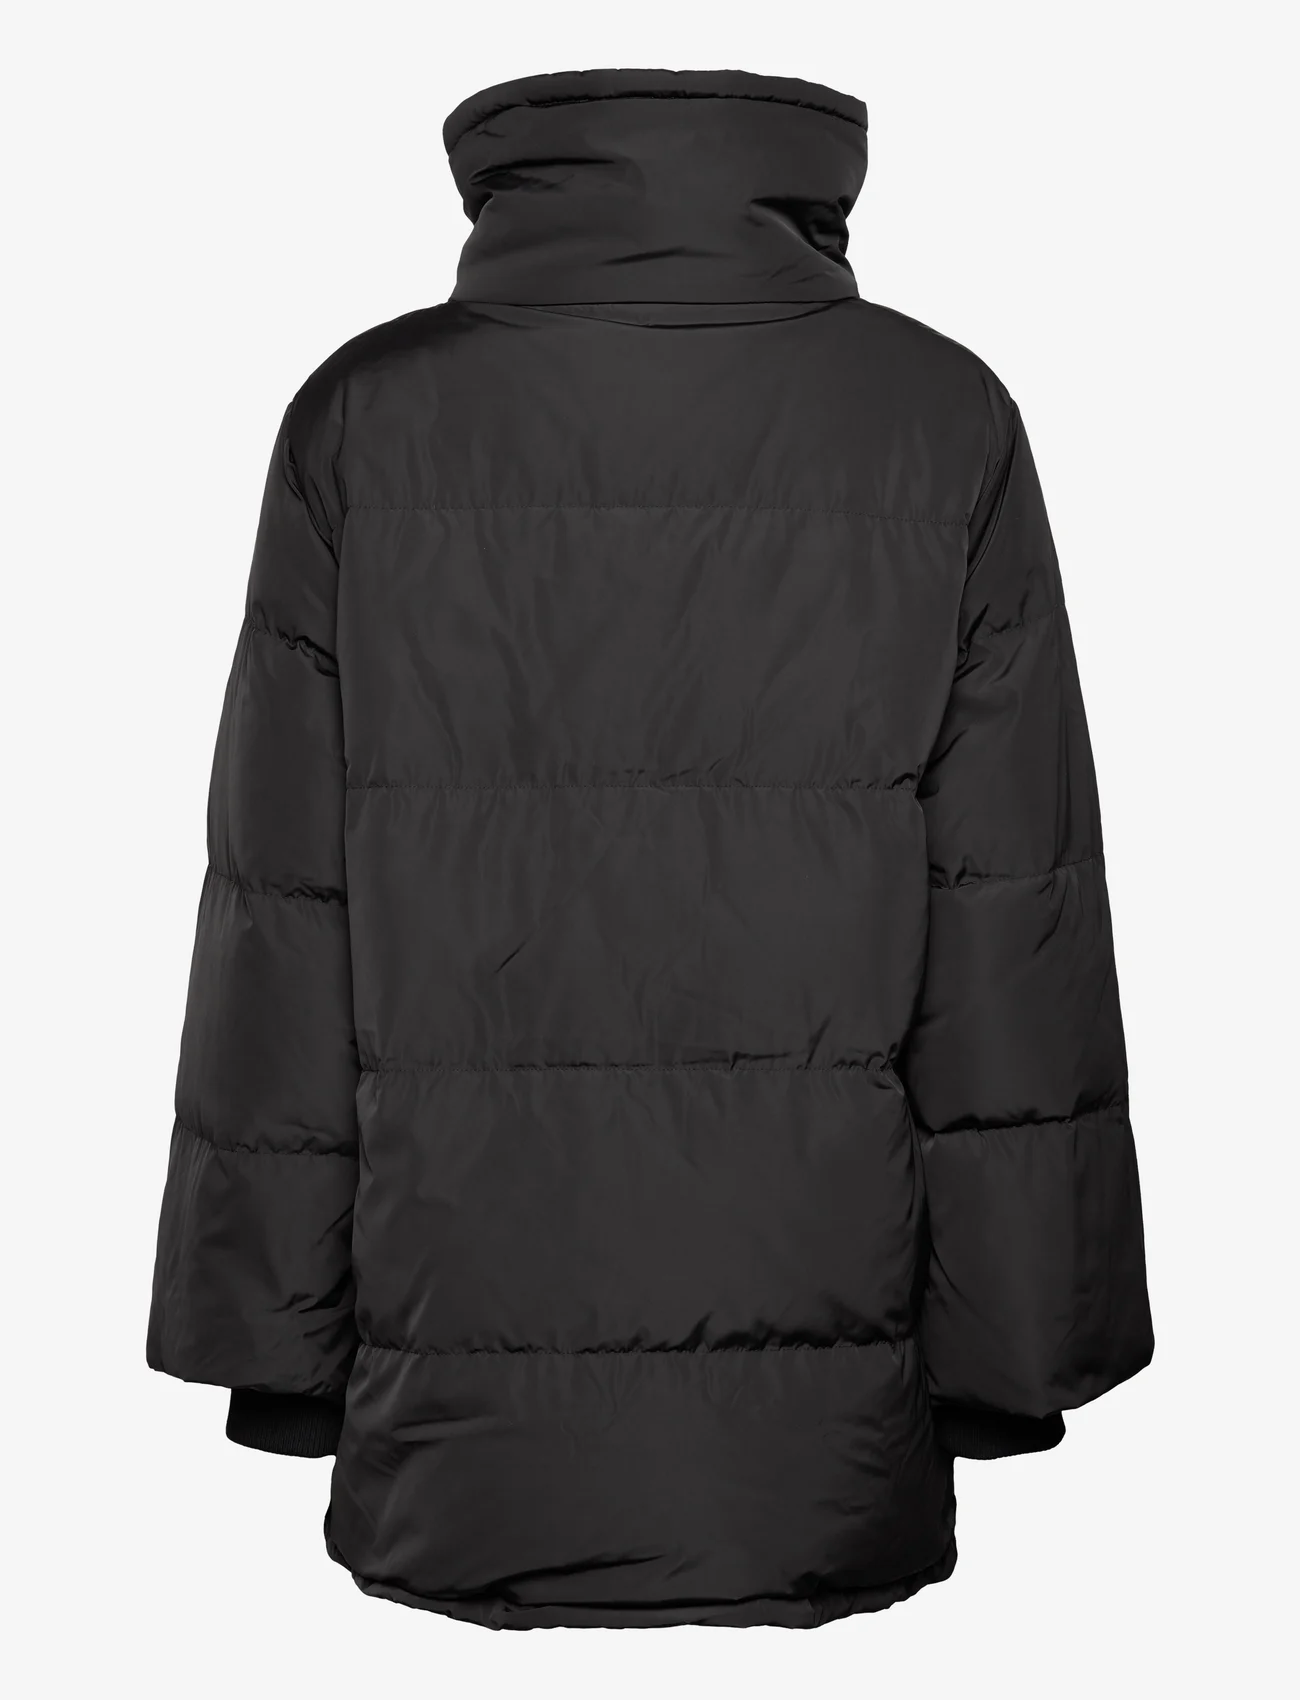 InWear - MaikeIW Puffer Coat - pitkät talvitakit - black - 1